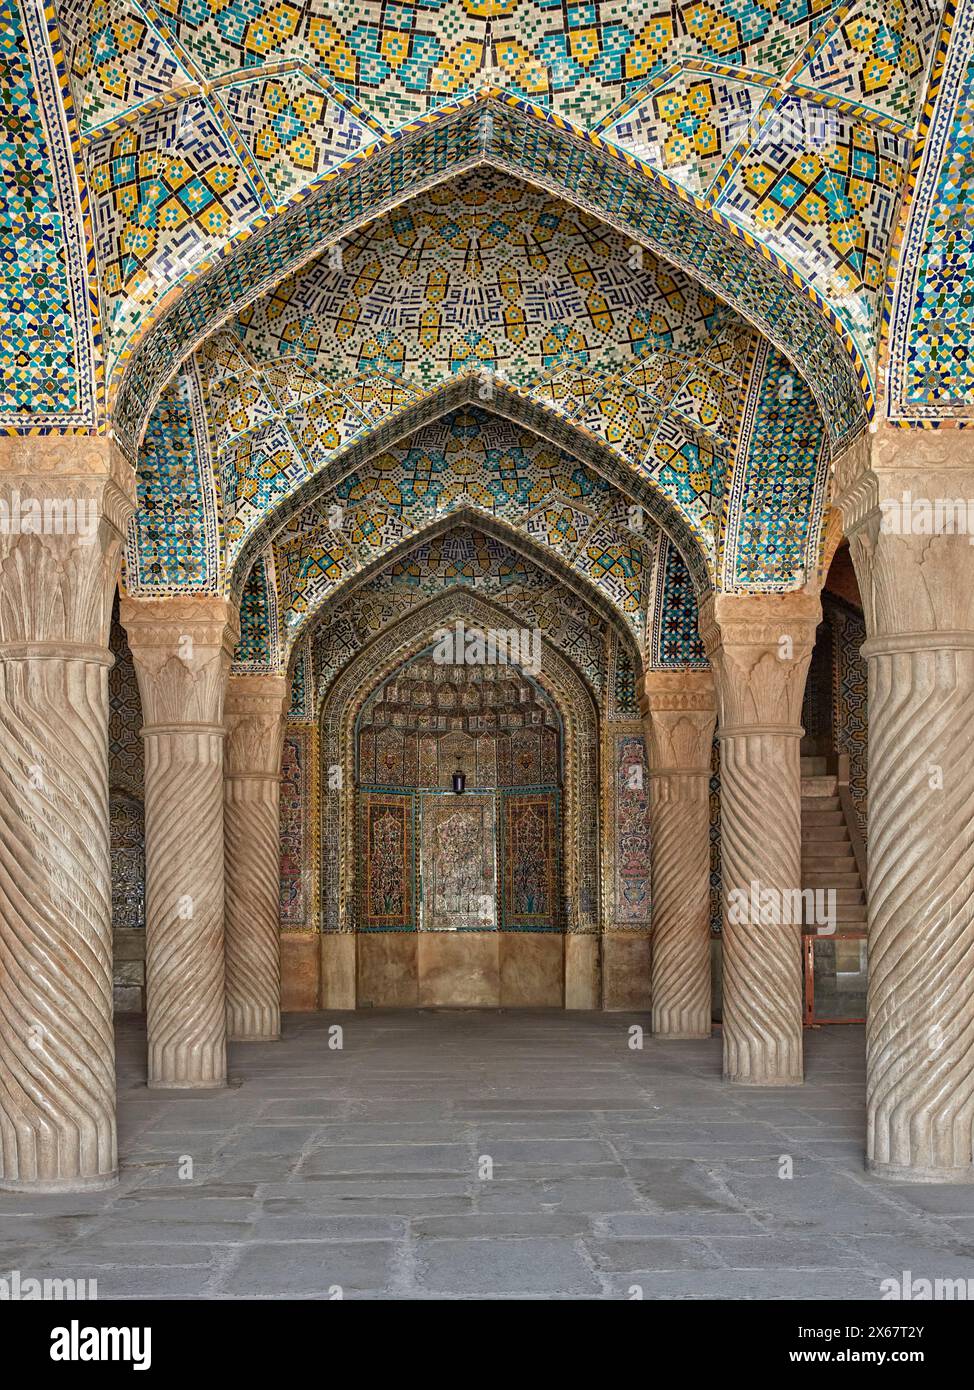 Mihrab (eine Nische in der Mauer, die die Richtung Mekka anzeigt) im Hauptgebetssaal der Vakil-Moschee aus dem 18. Jahrhundert. Shiraz, Iran. Stockfoto